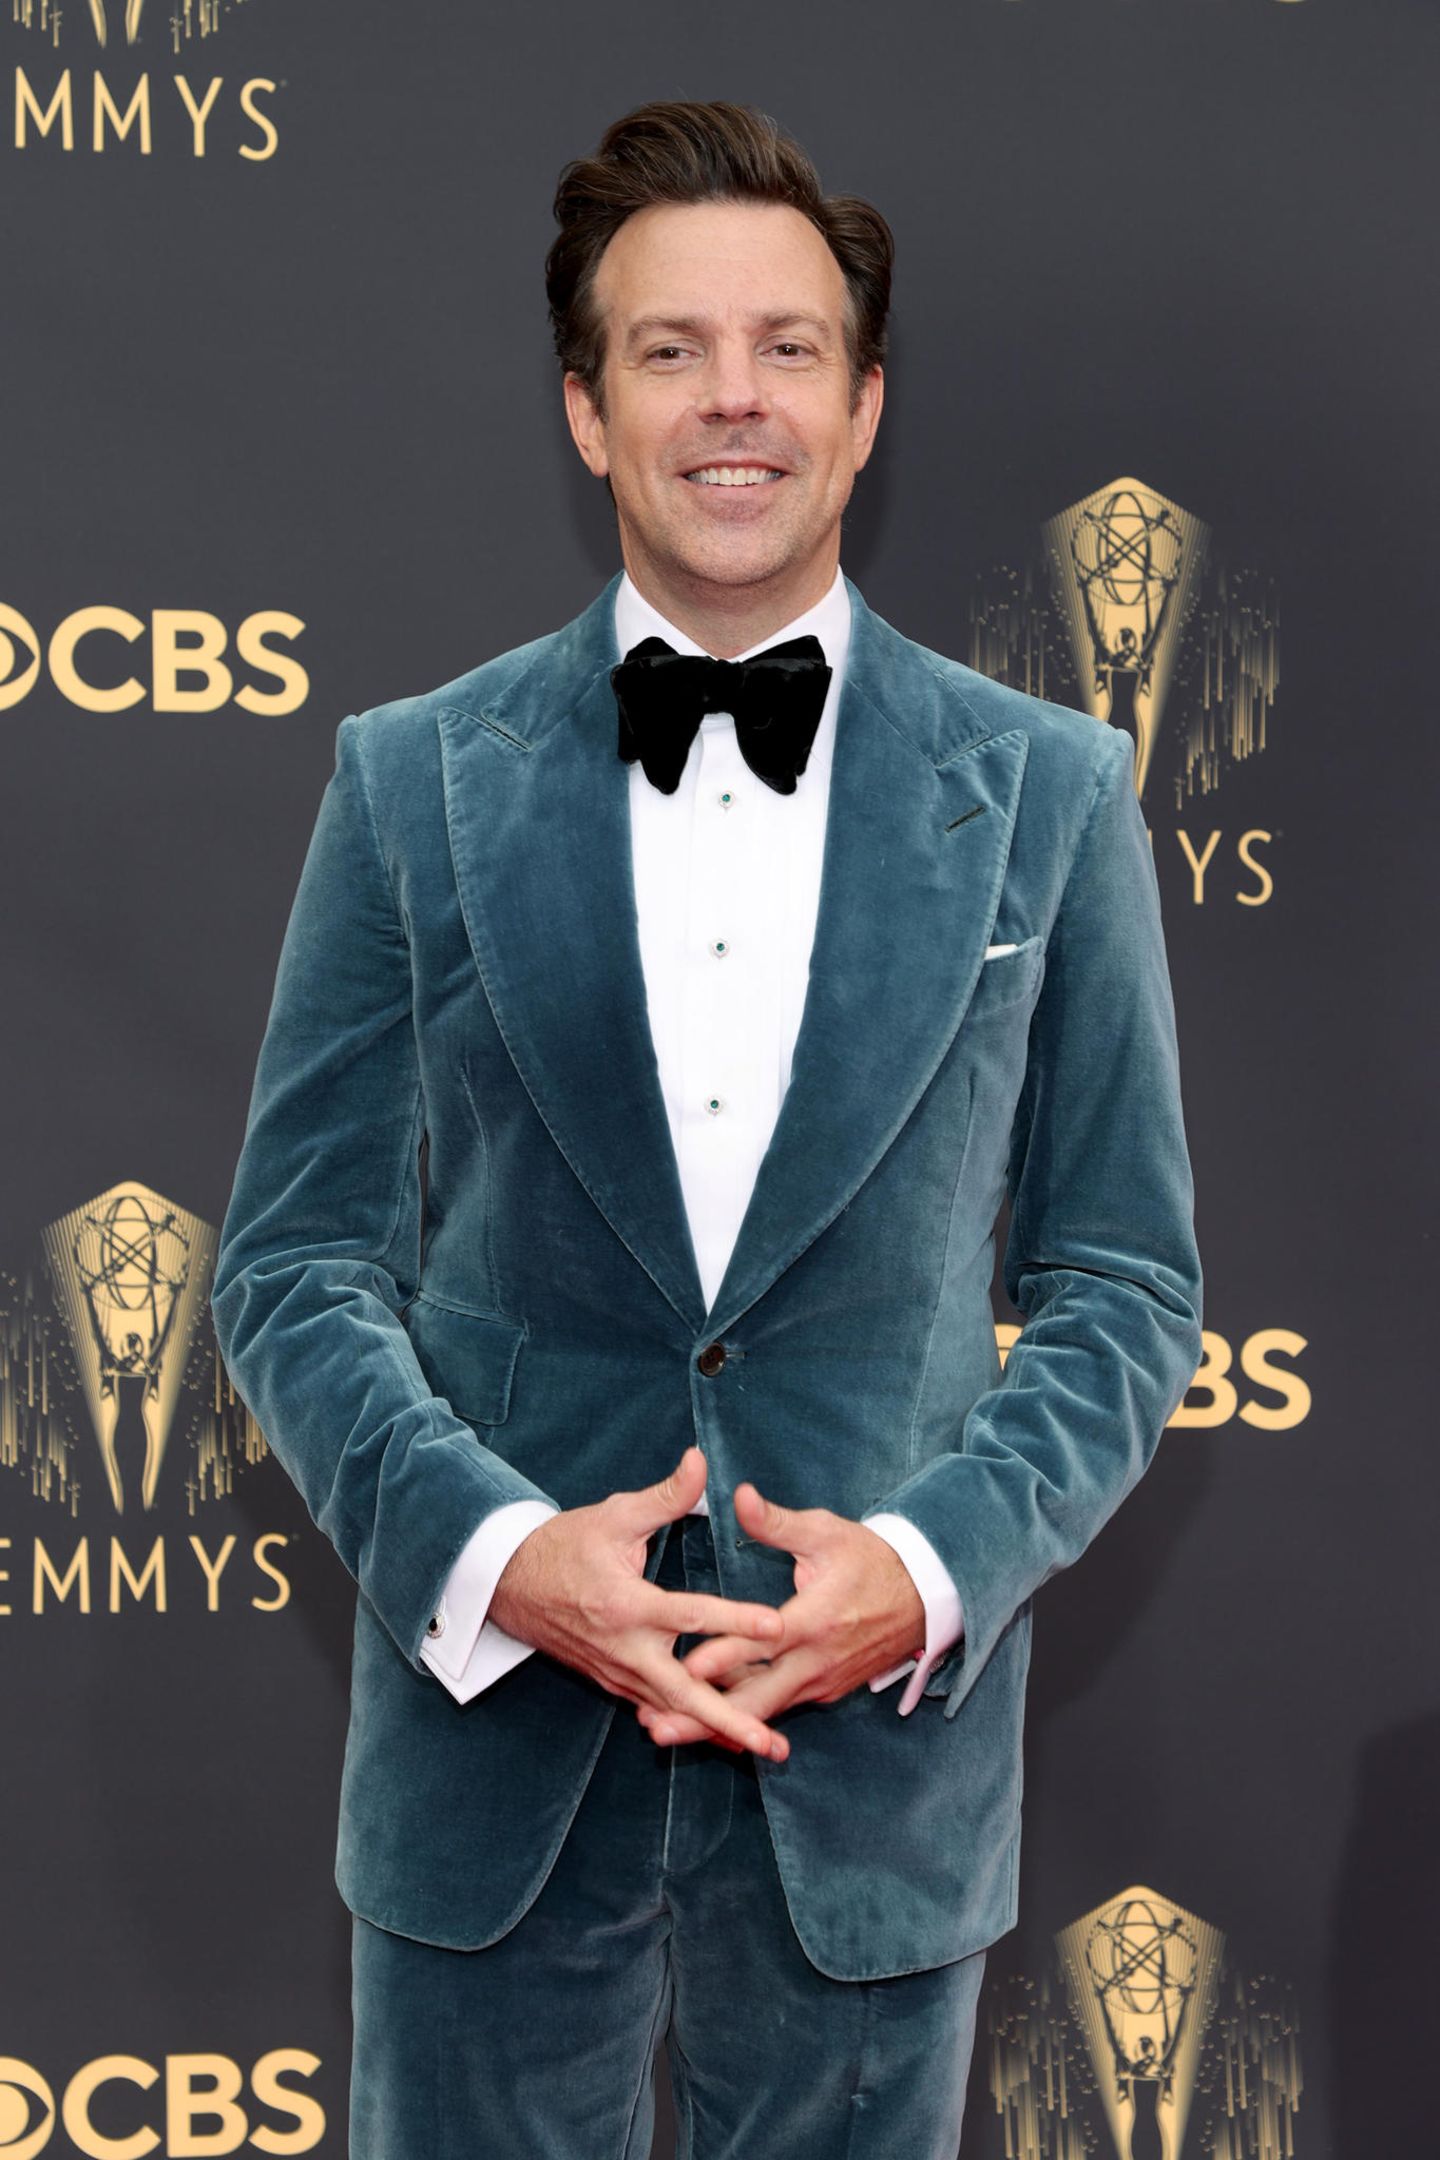 Ob Jason Sudeikis sich seinen Look für die Emmys bei Schauspielkollege Chris Evans abgeguckt hat? Der trug nämlich schon mal einen ähnlichen Look auf dem Red Carpet. Davon lässt sich Jason jedoch nicht beirren. Vielmehr nutzt er die Chance, um das Samt-Jackett zu seinem eigenen zu machen, indem er es zur passenden Anzughose kombiniert.